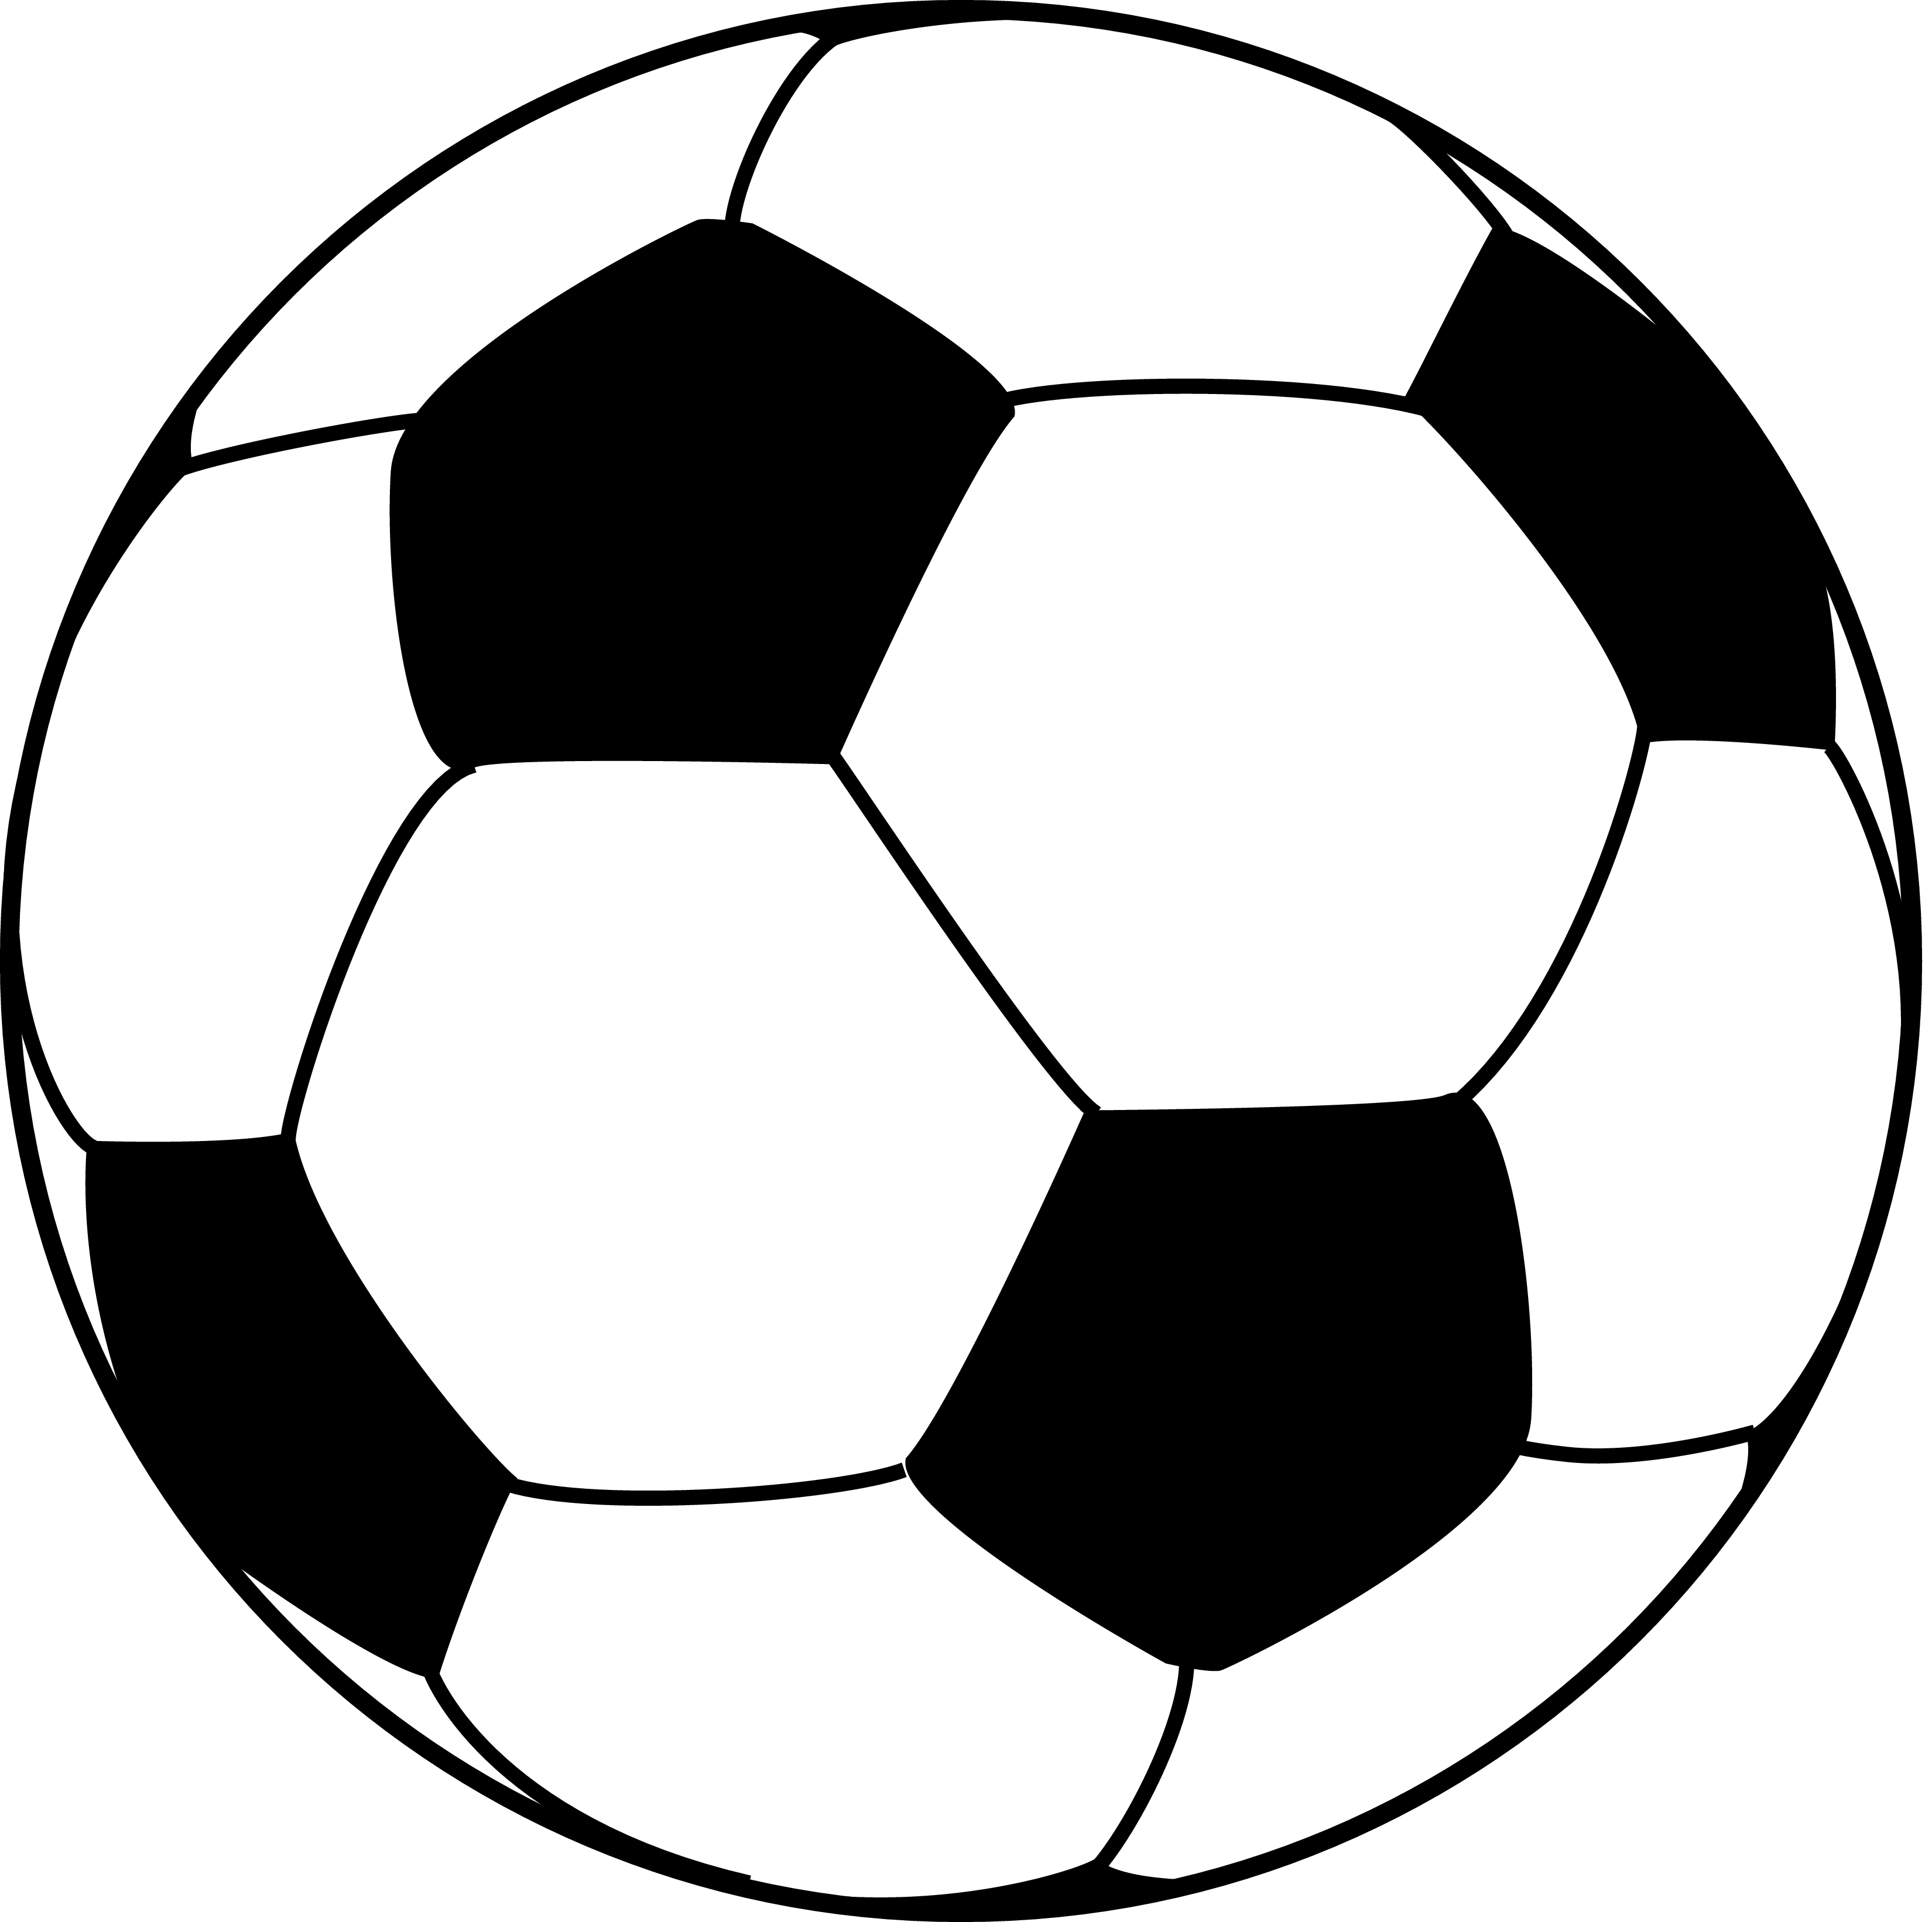 13 T-Ball Logos Vector Art Images - Vector Soccer Ball Clip Art, Sports